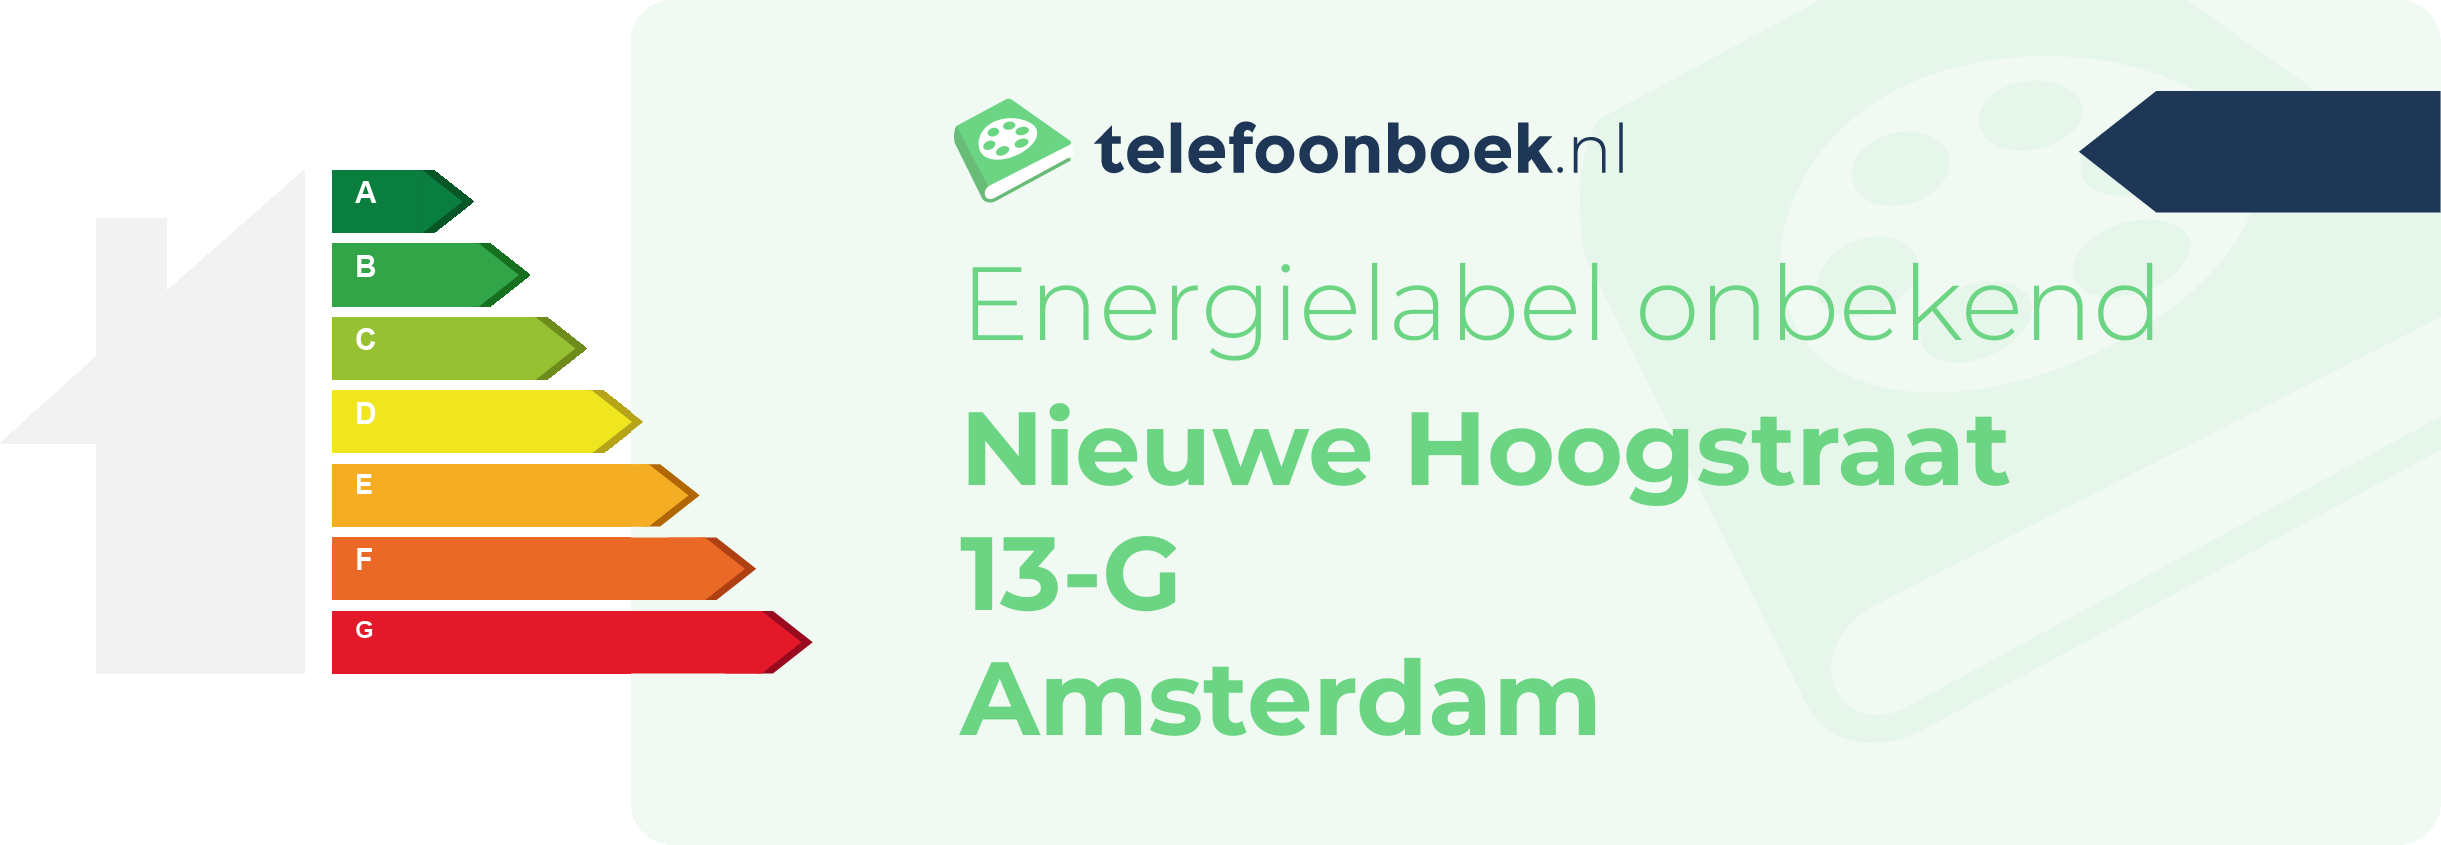 Energielabel Nieuwe Hoogstraat 13-G Amsterdam